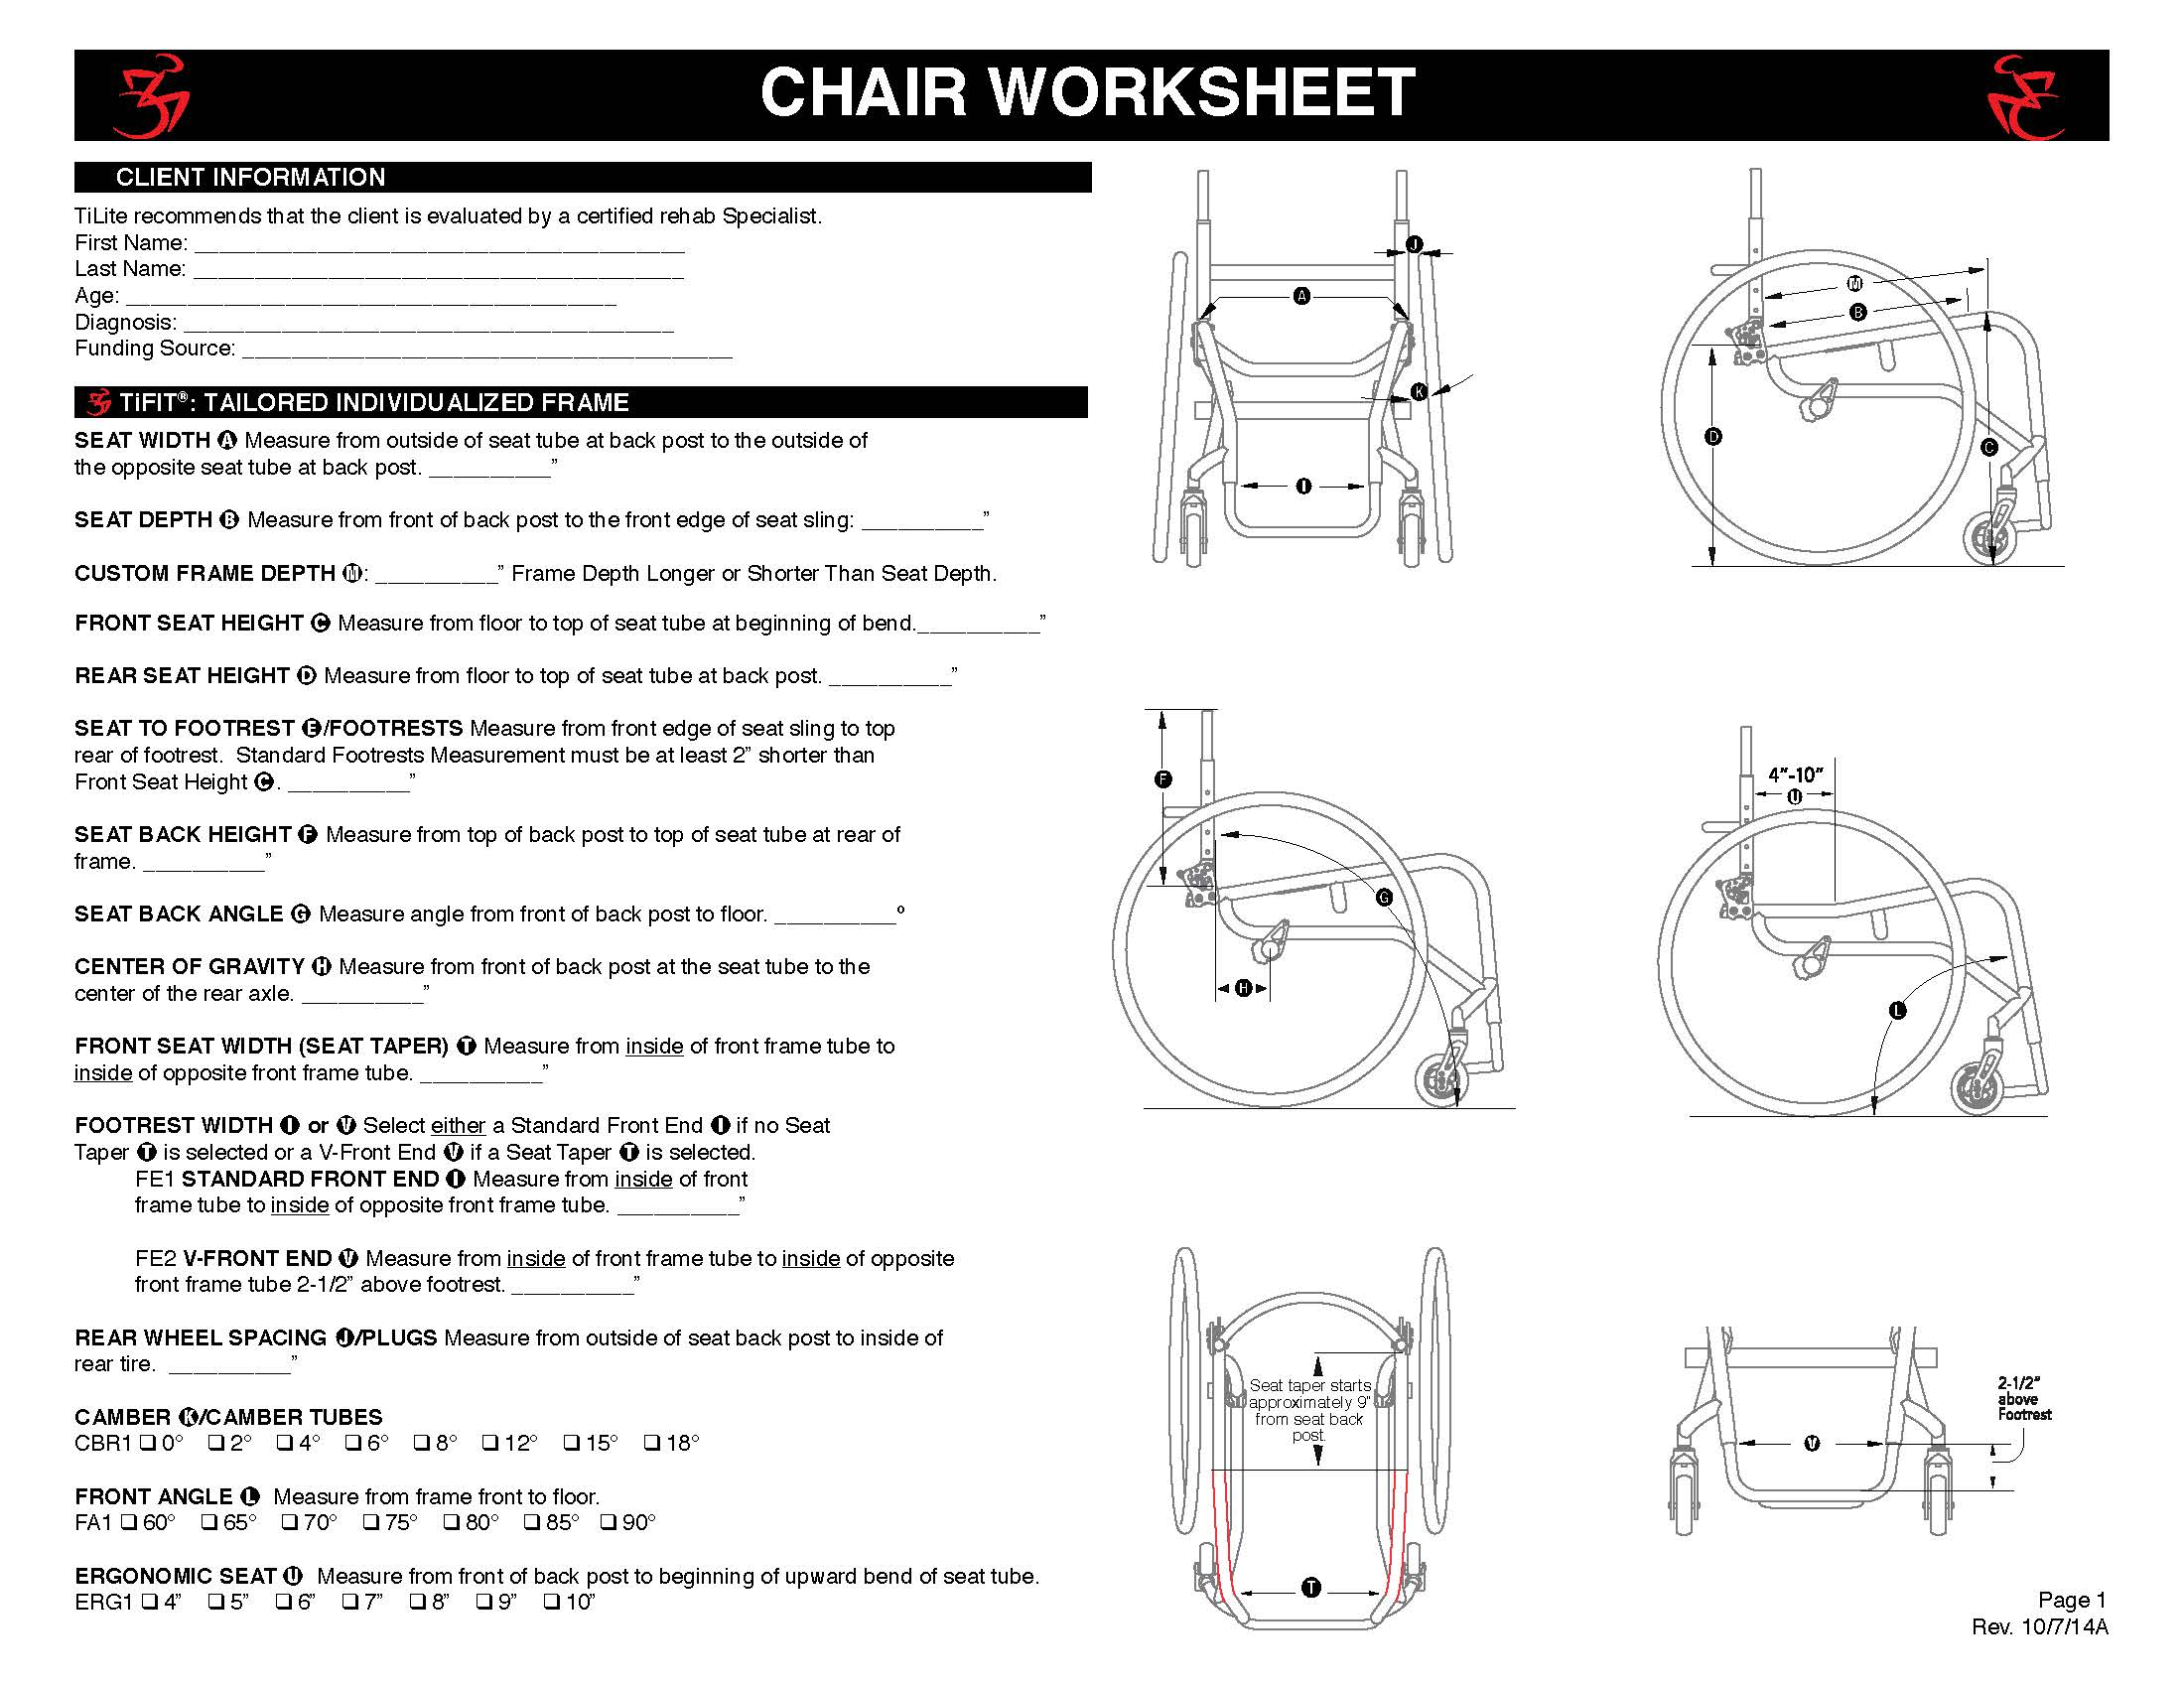 TiFit Chair Worksheet_Page_1